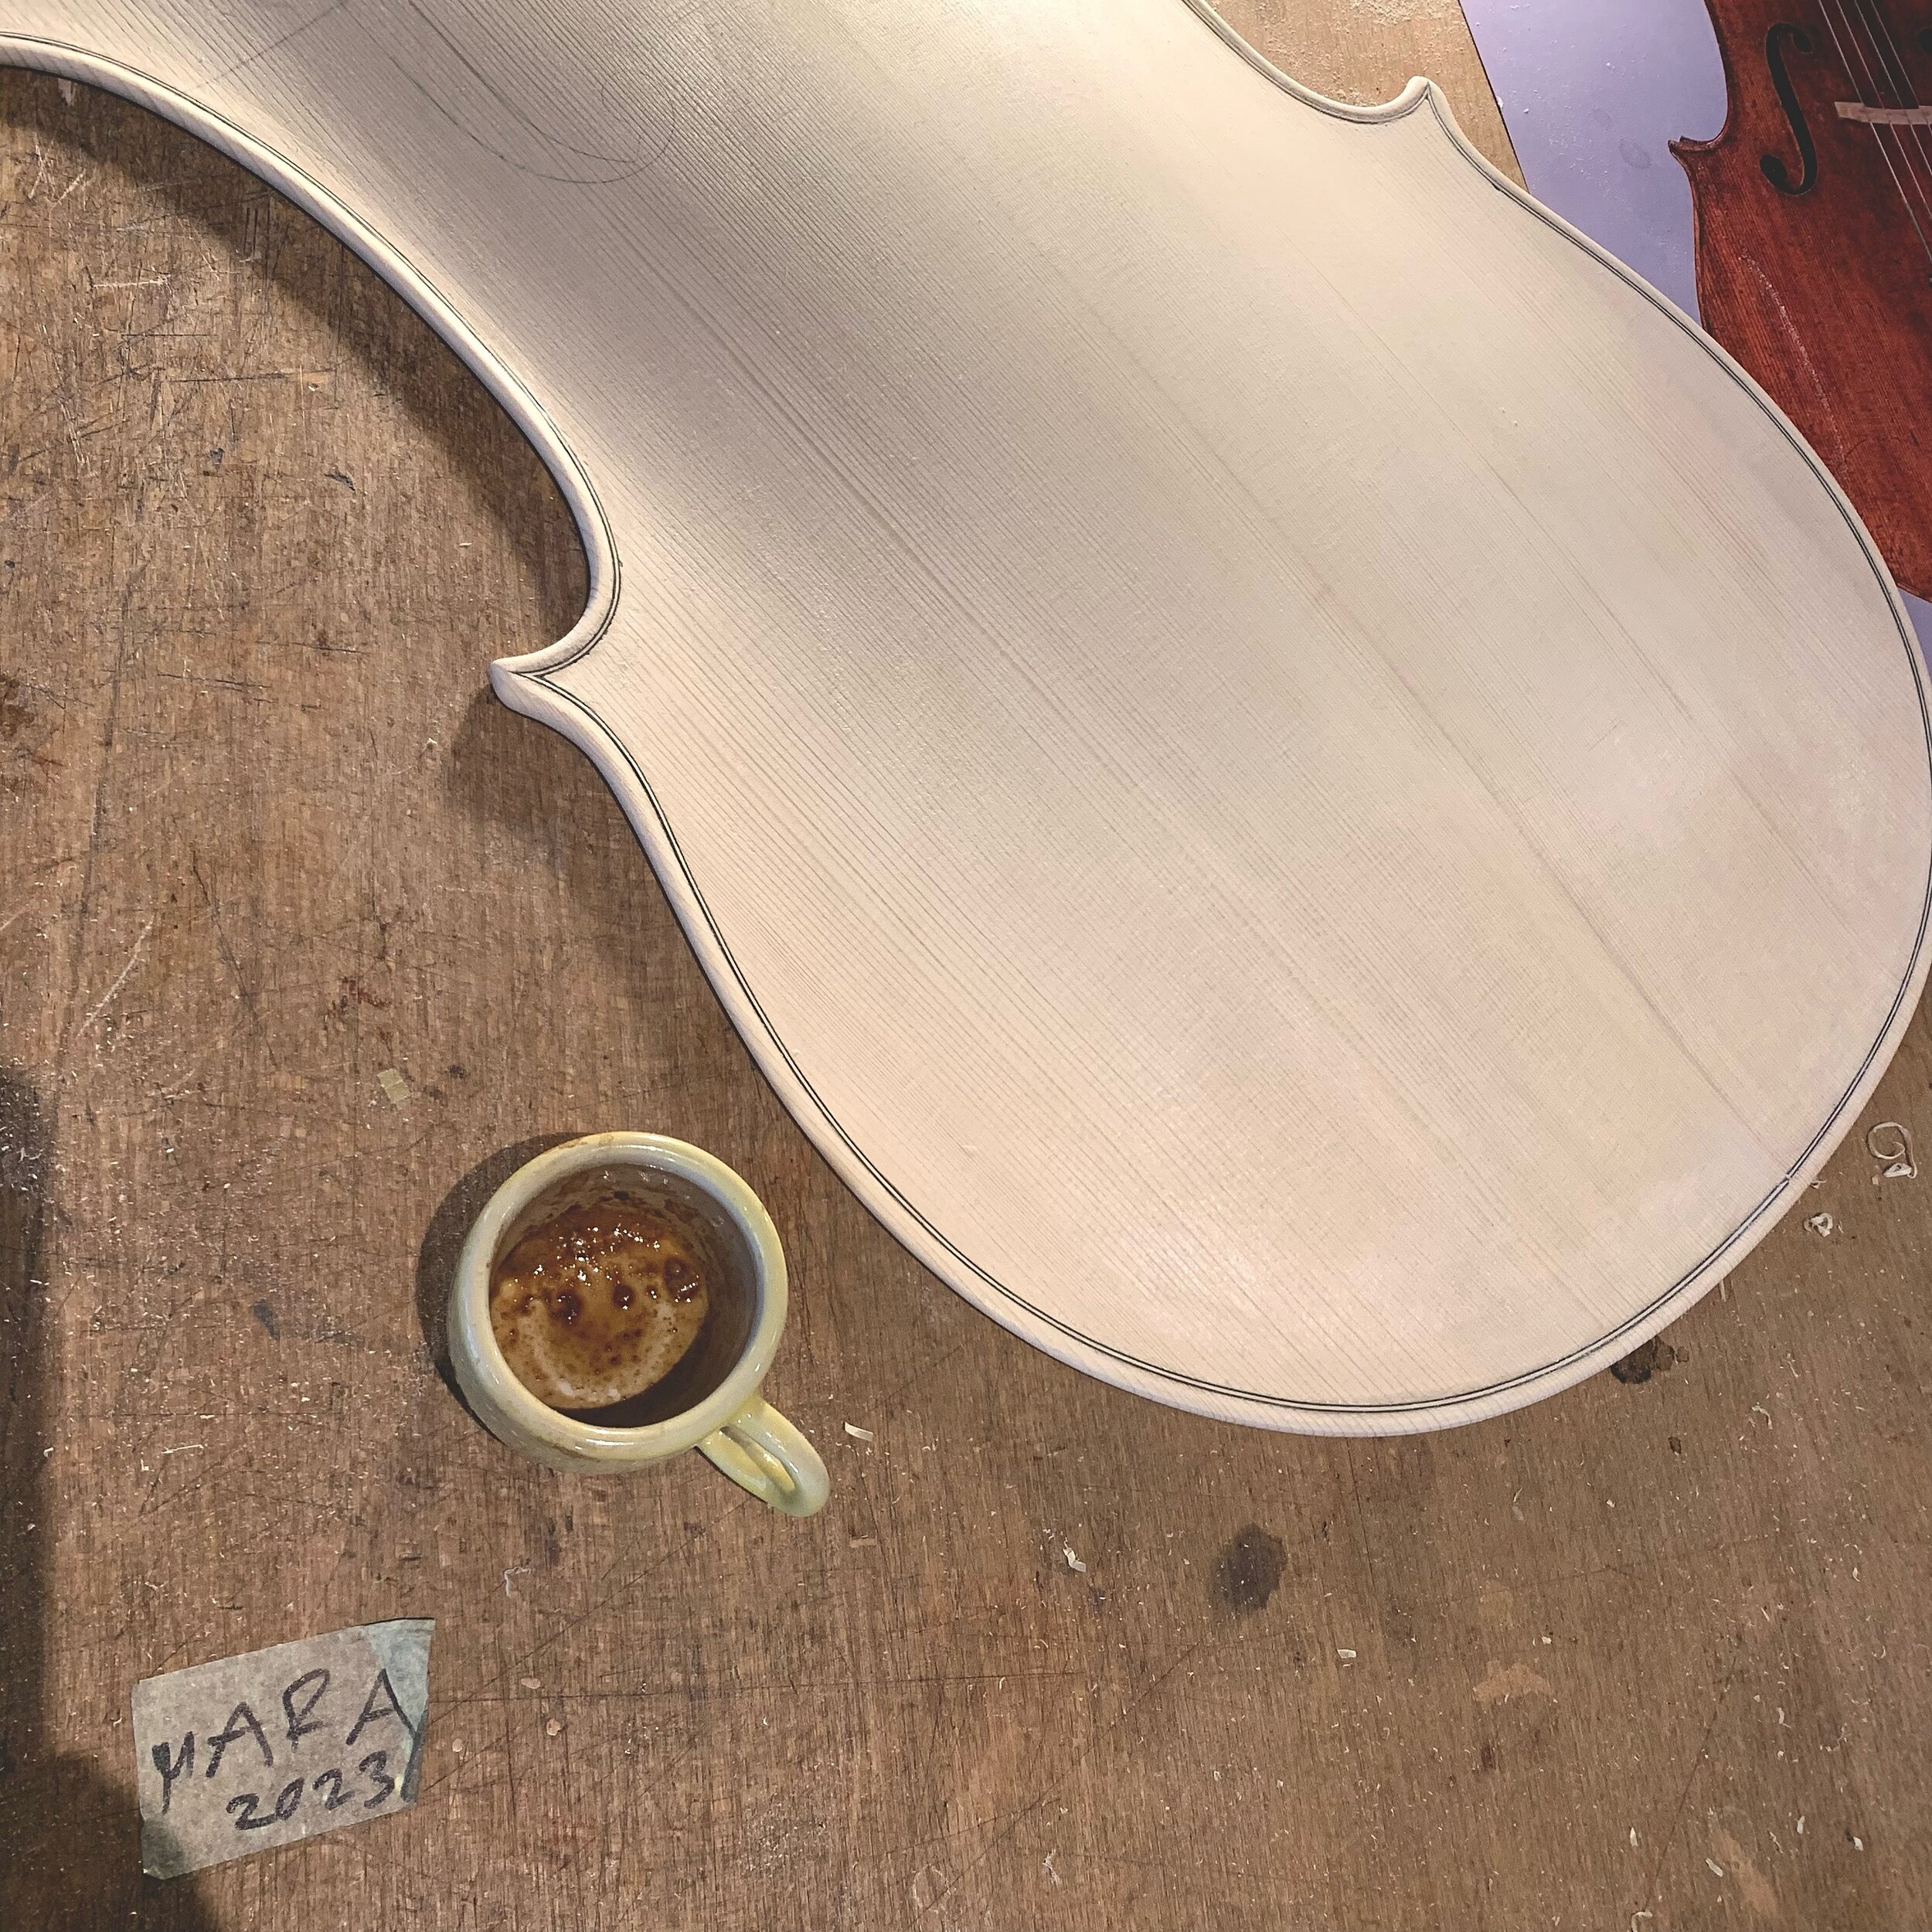 Das n&auml;chste Cello entsteht - daf&uuml;r brauchts auch regelm&auml;ssig einen Kaffee☺️
&bull;
&bull;
&bull;
#cellomaking #stradivaricello #antoniostradivari🎻 #geigenbauer #newinstrument #newworks #coffelovers 
@aromawerk.ch